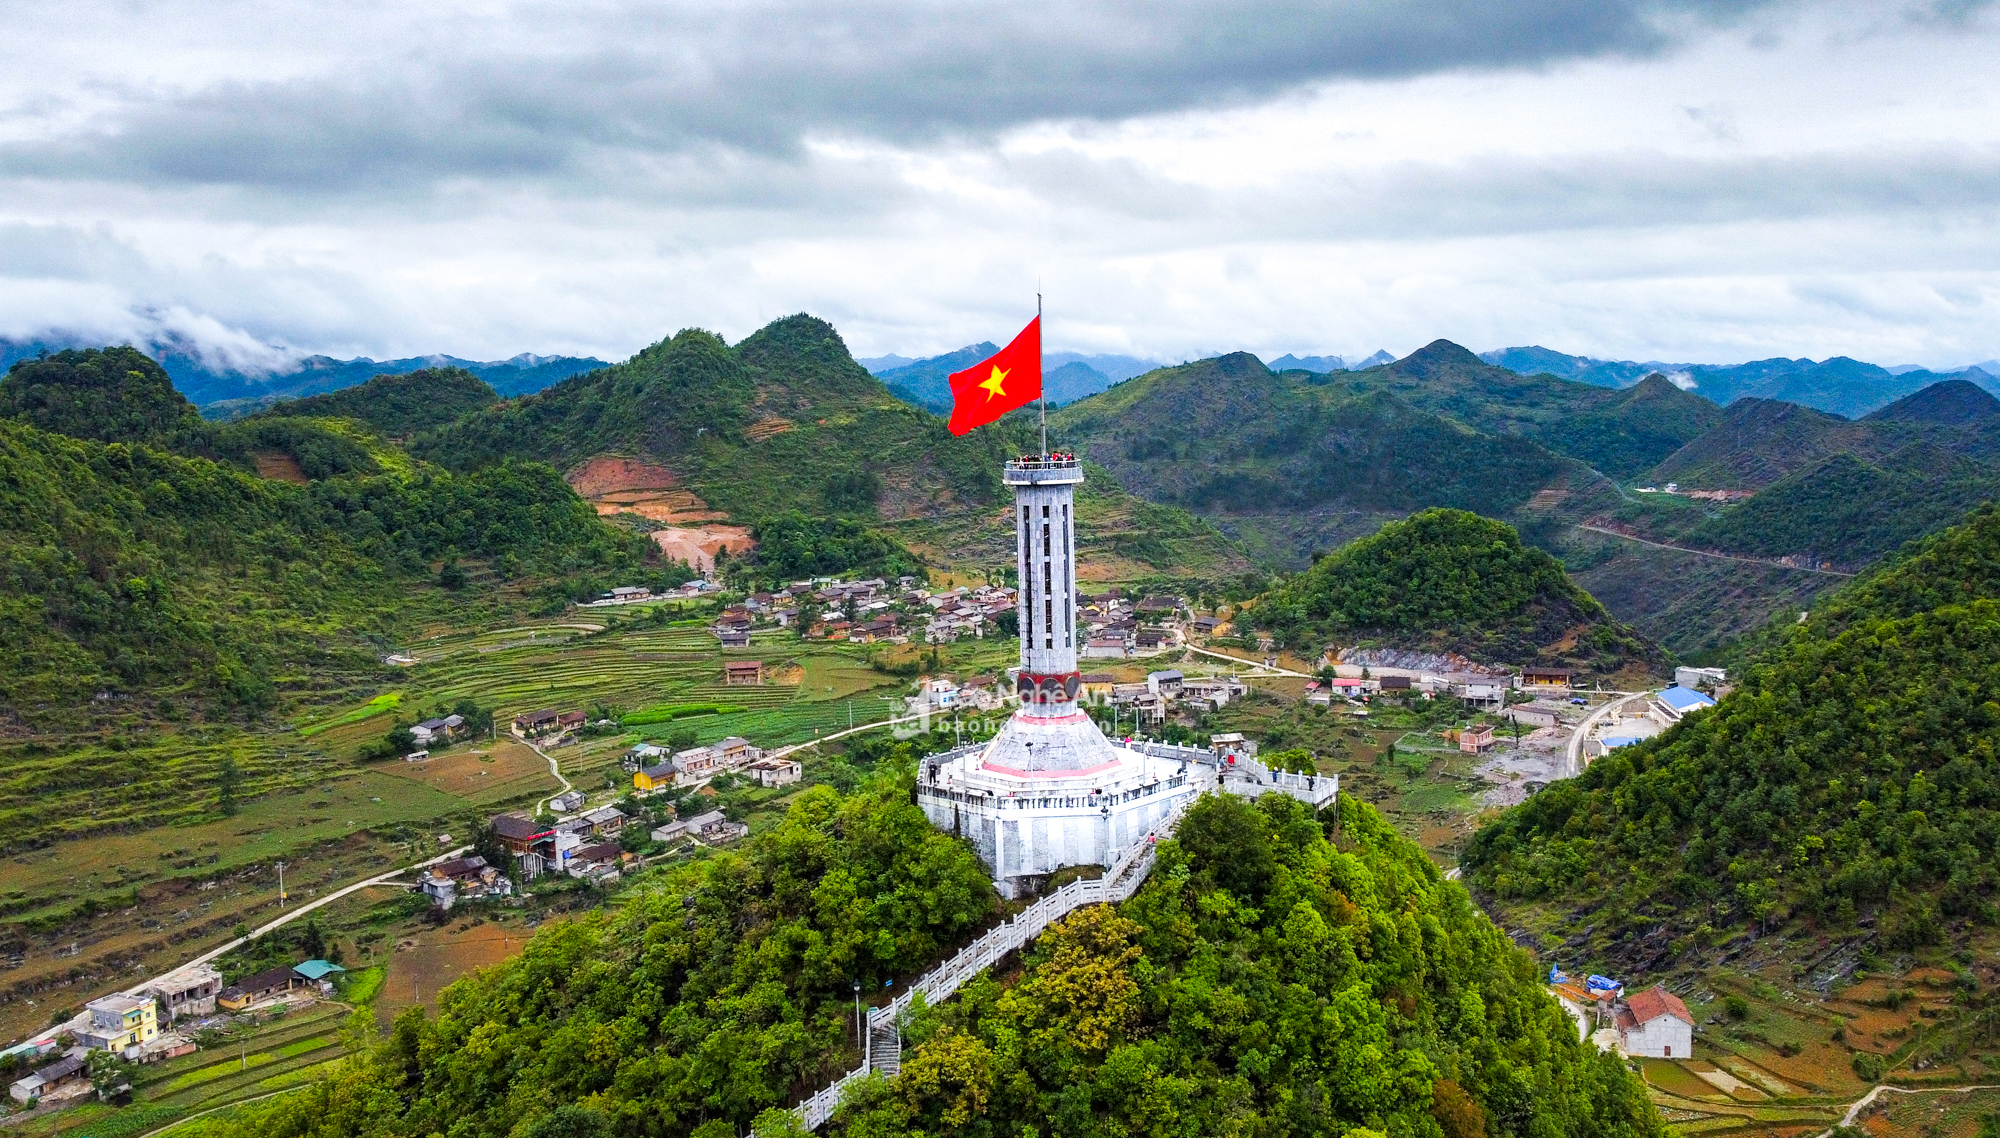 Di tích lịch sử Quốc gia Cột cờ Lũng Cú - biểu tượng thiêng liêng của chủ quyền Tổ quốc Việt Nam. Ảnh: Thành Cường